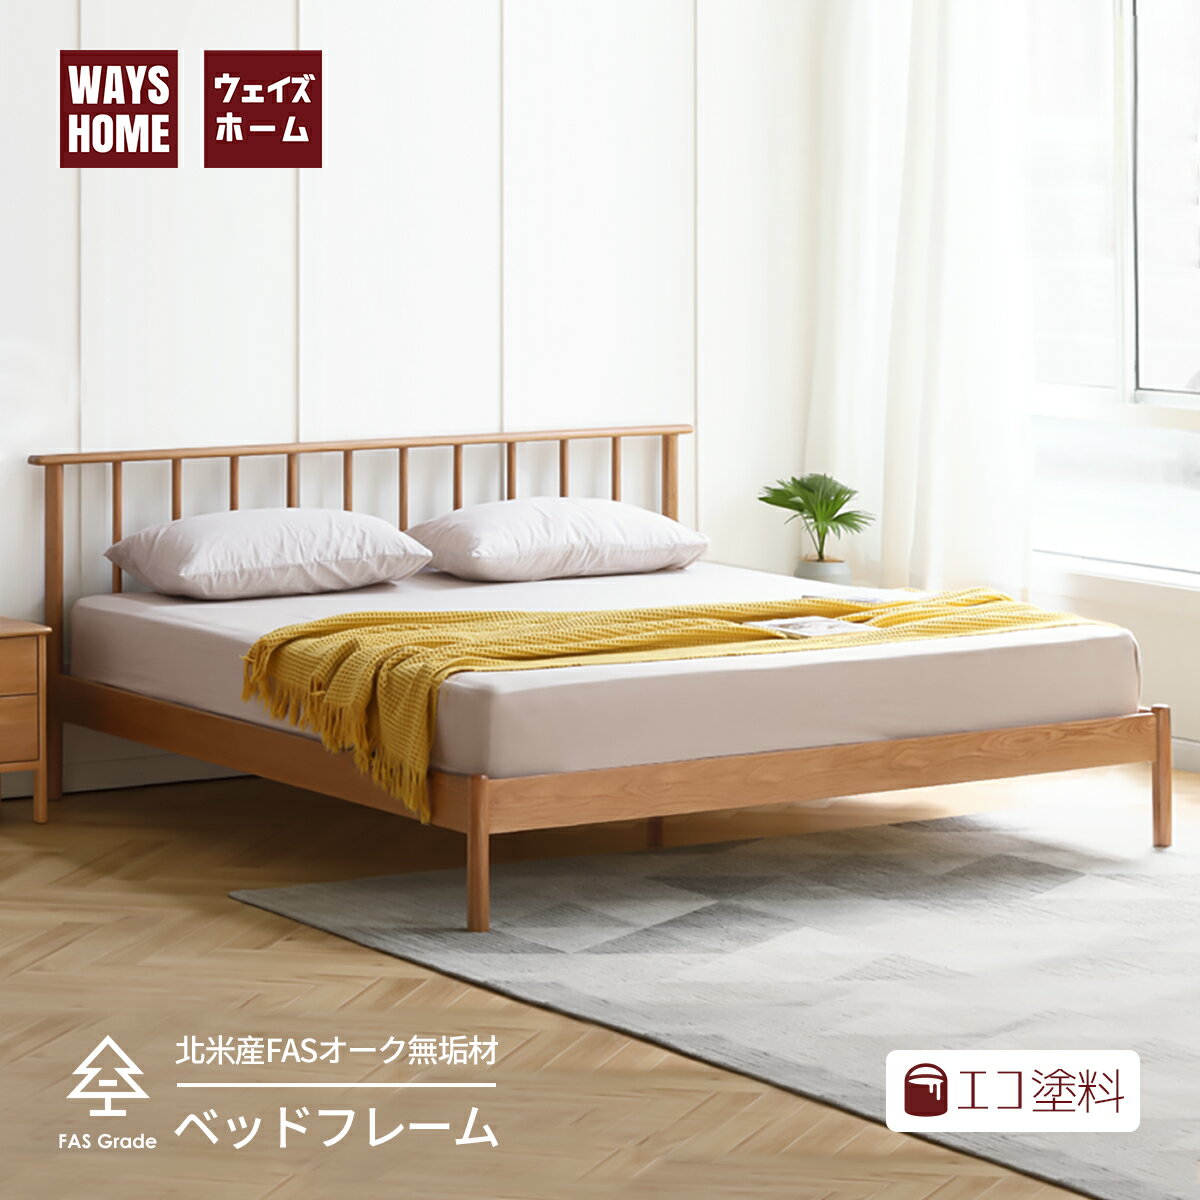 【在庫処分】WAYSHOME ベッド ベッドフレーム セミダブル 幅120cm北米産FASグレードオーク材 100%無垢材 すのこベッド 天然木 エコ塗料 フレームのみ 組み立てサービス付き シンプル ナチュラル